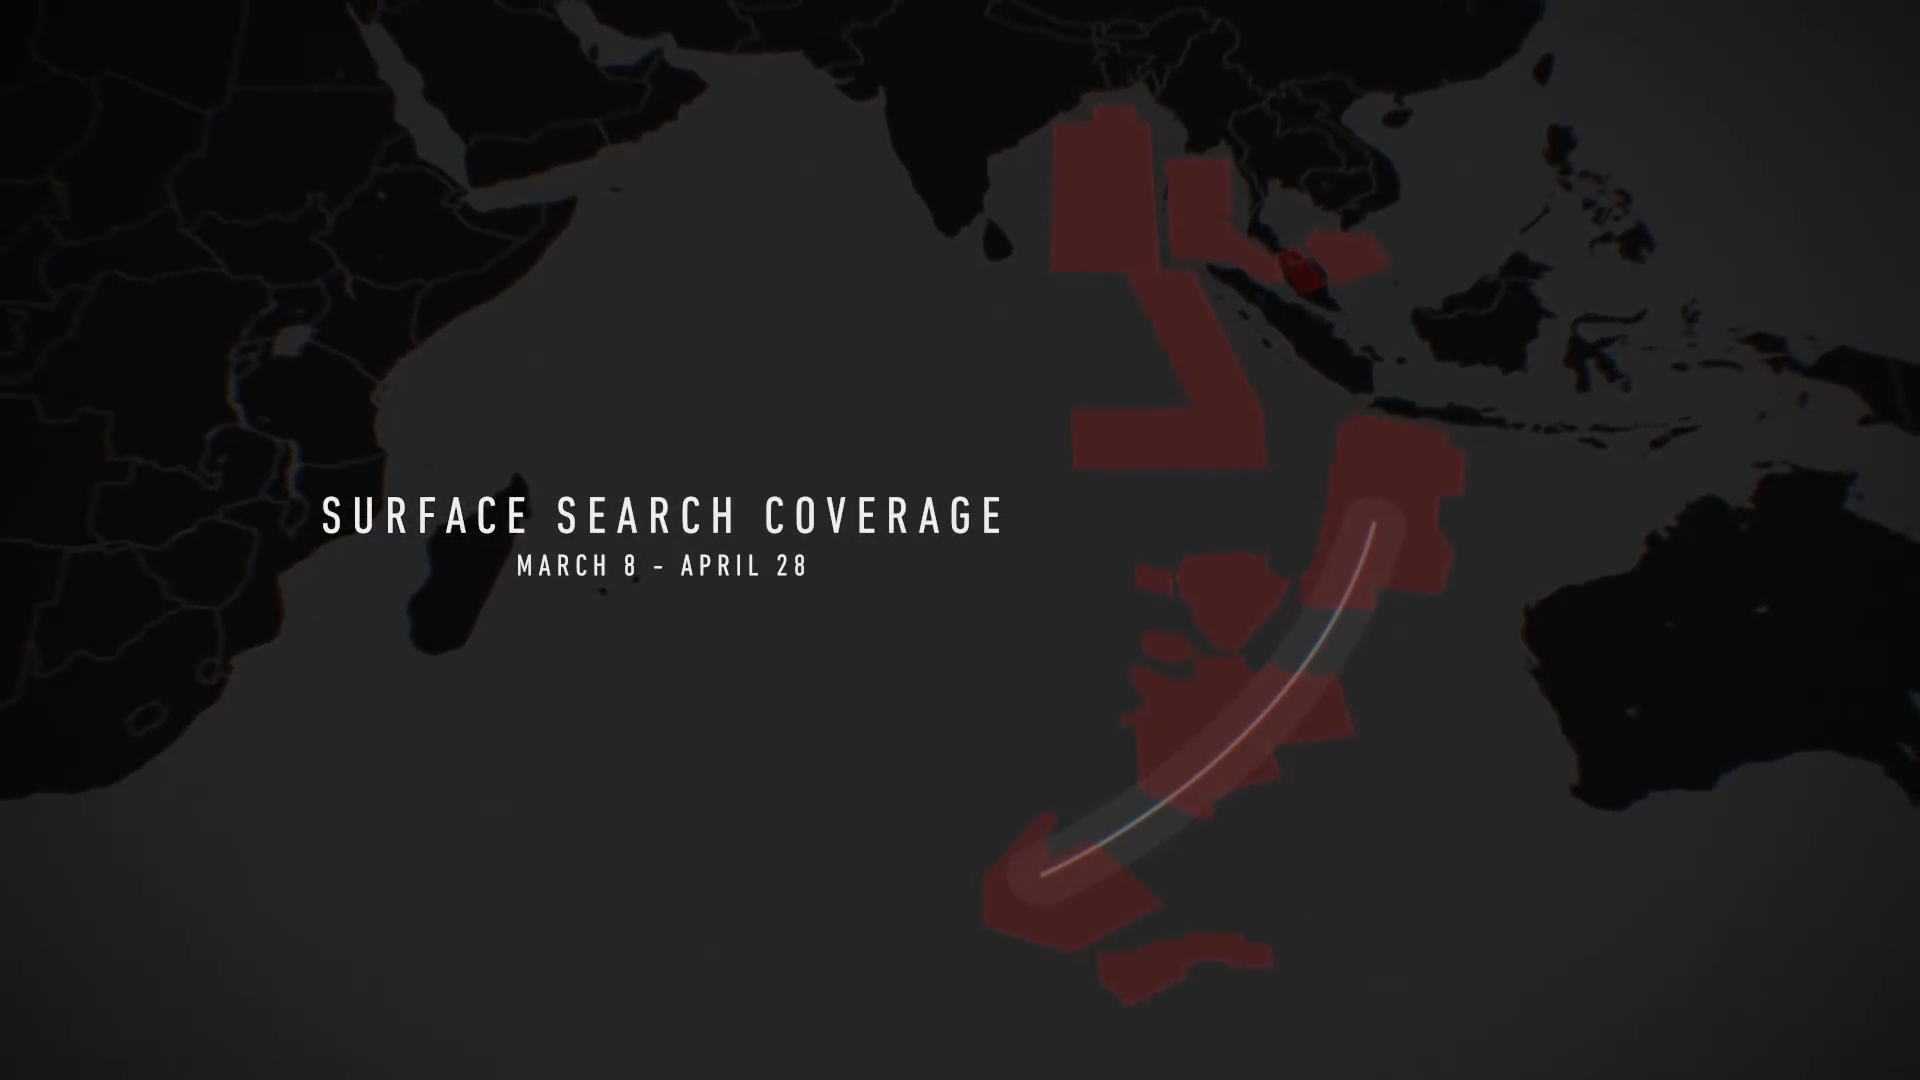 Area Pencarian MH370 Yang Hilang